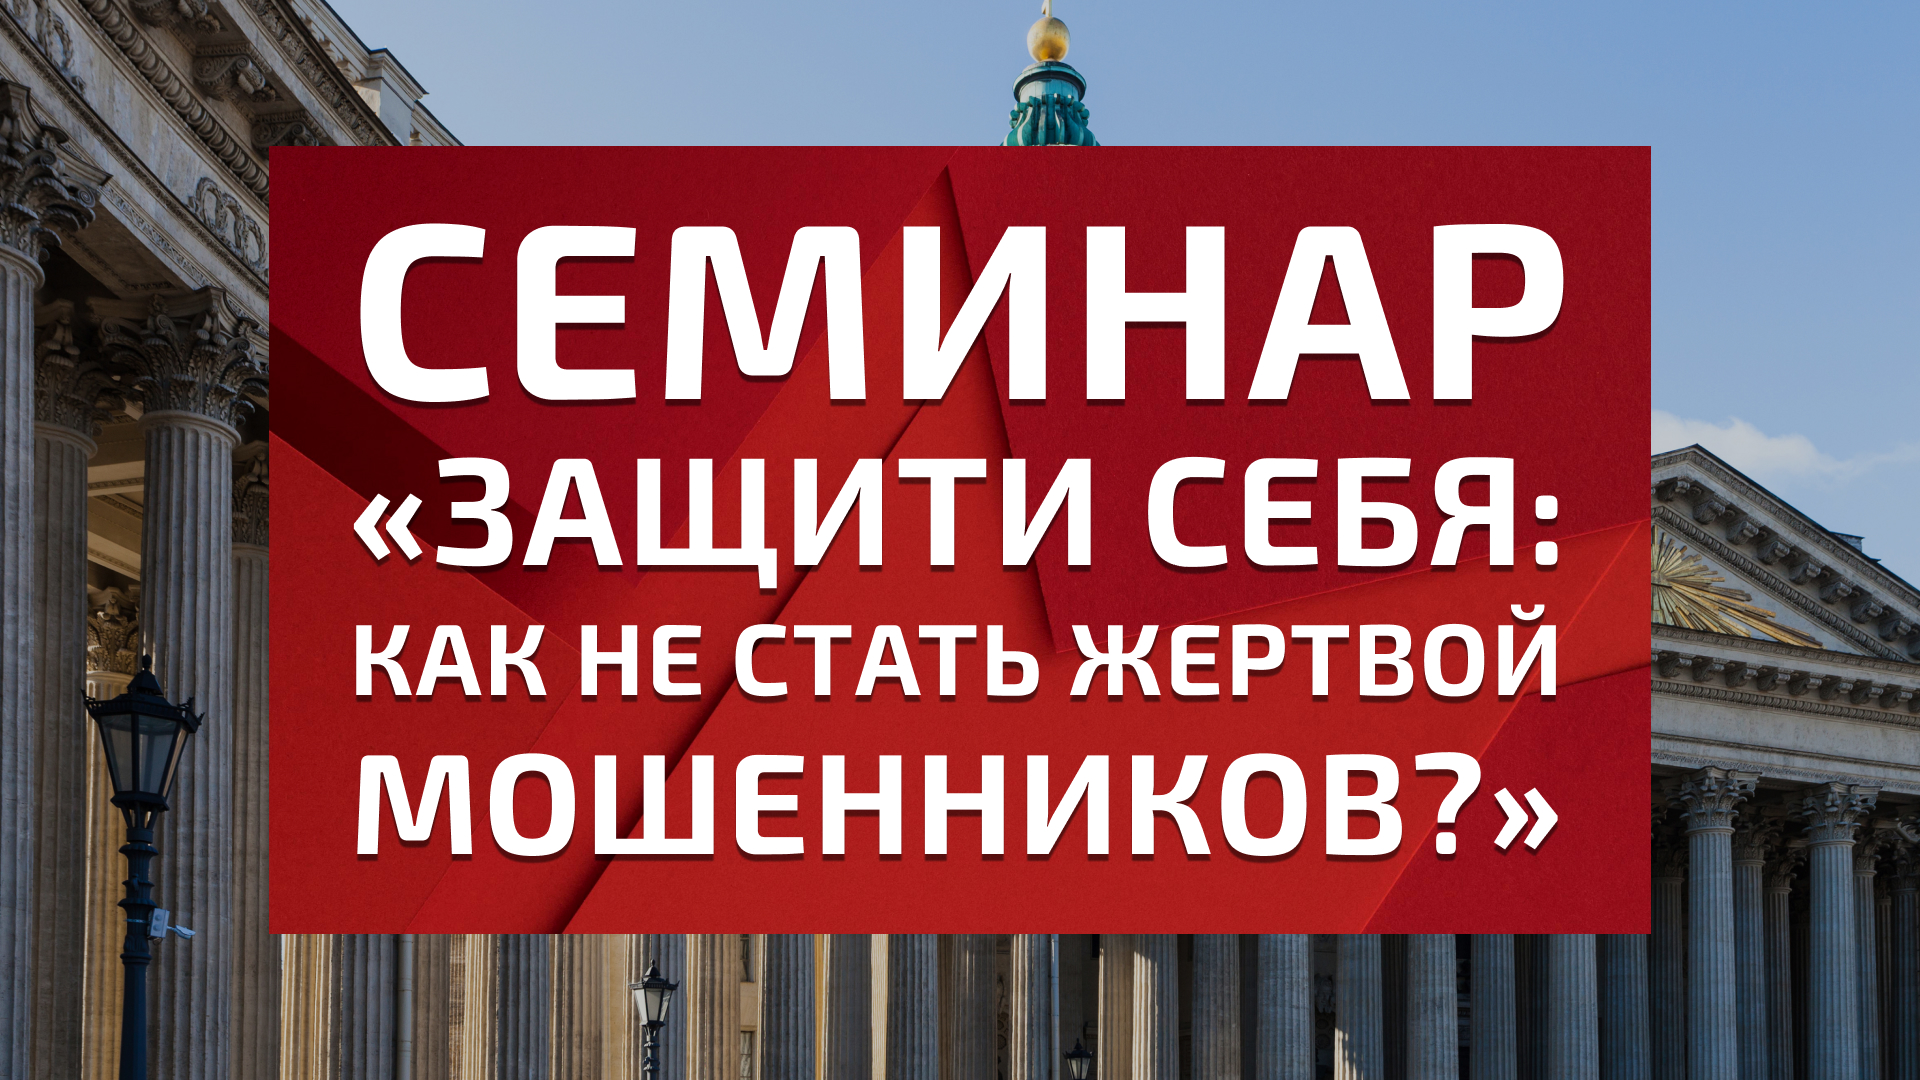 Юристы ЕЦЗ проведут правовой семинар в Санкт-Петербурге 